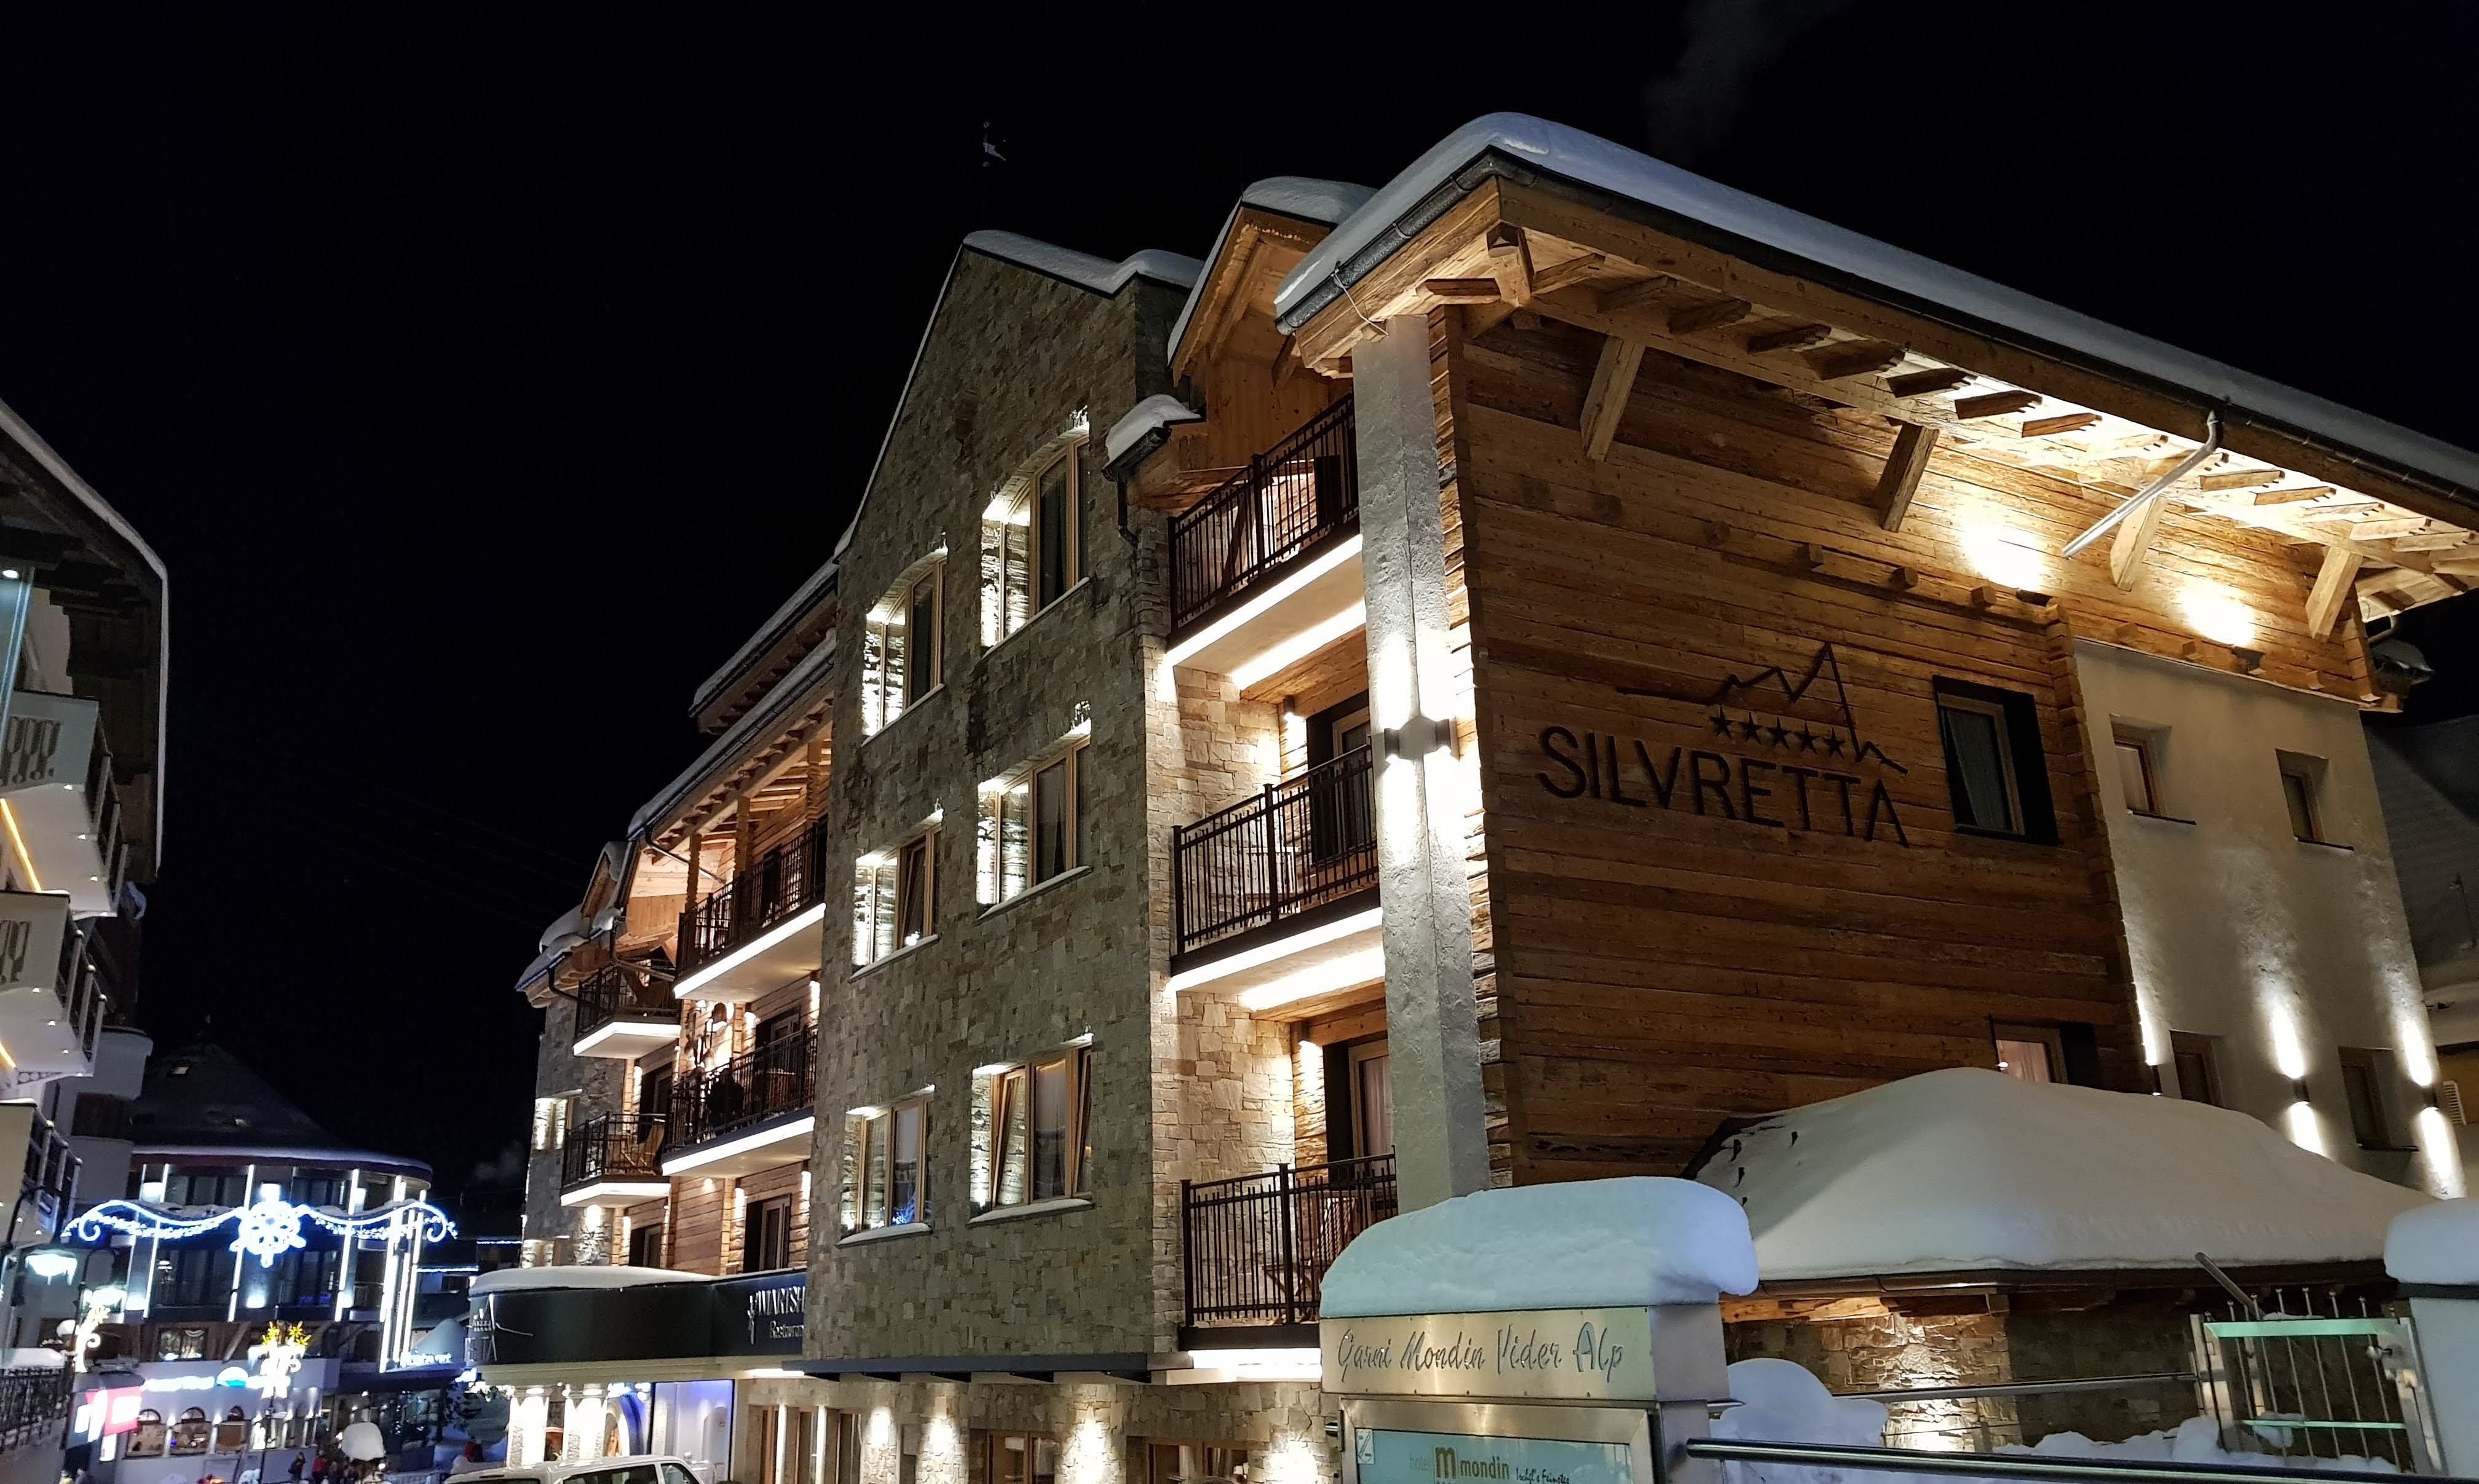 Het vijfsterren hotel Silvretta in Ischgl